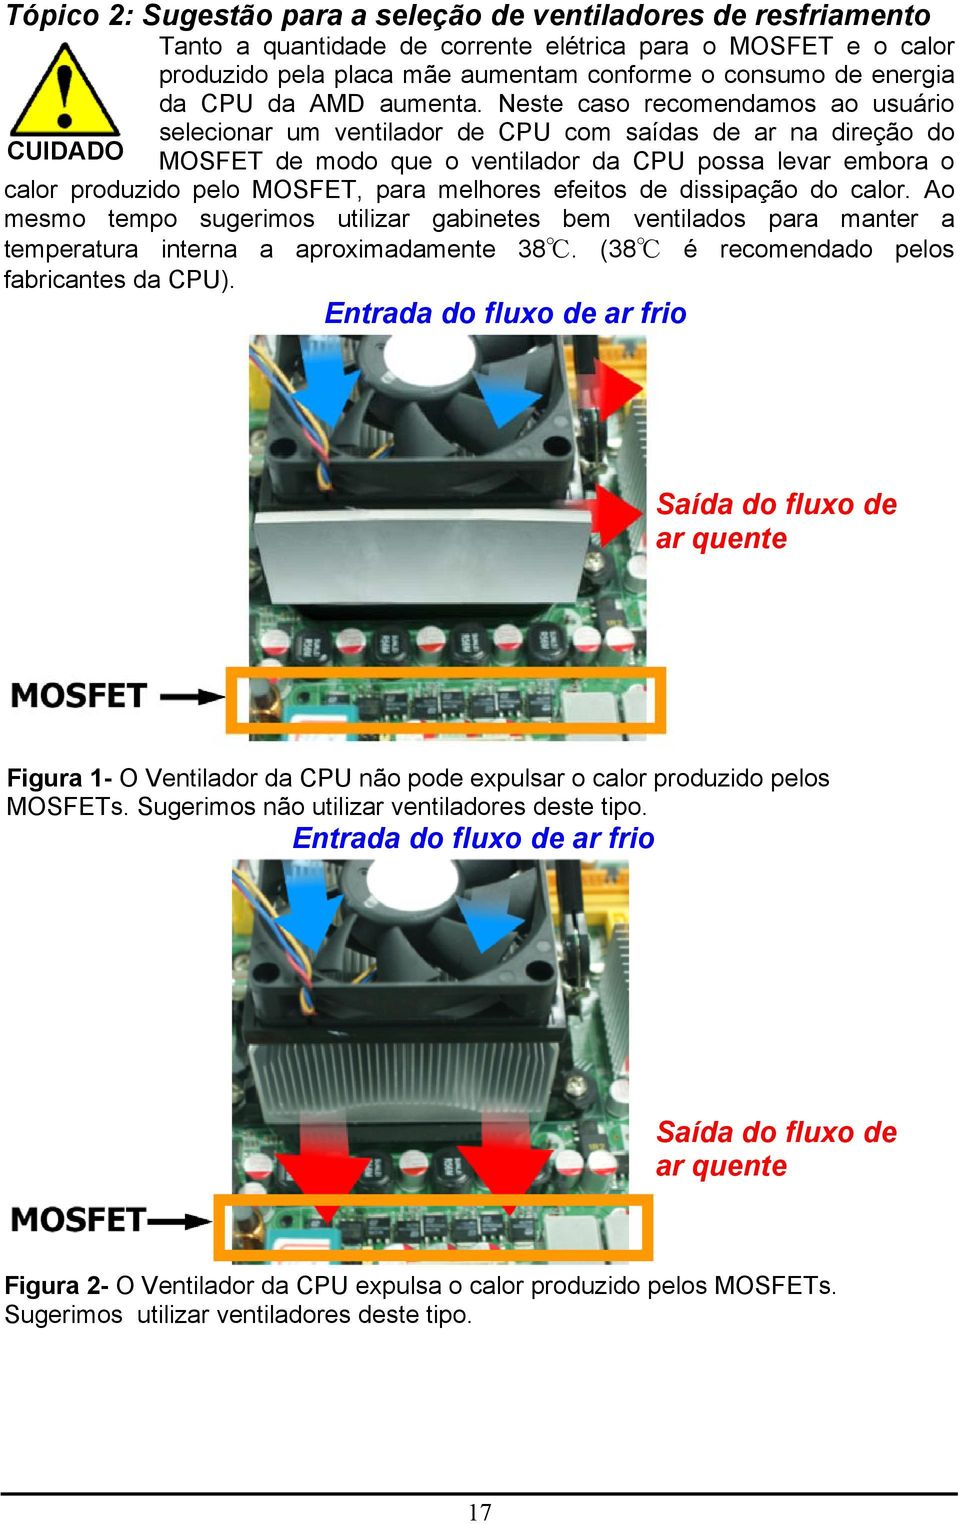 Neste caso recomendamos ao usuário CUIDADO selecionar um ventilador de CPU com saídas de ar na direção do MOSFET de modo que o ventilador da CPU possa levar embora o calor produzido pelo MOSFET, para